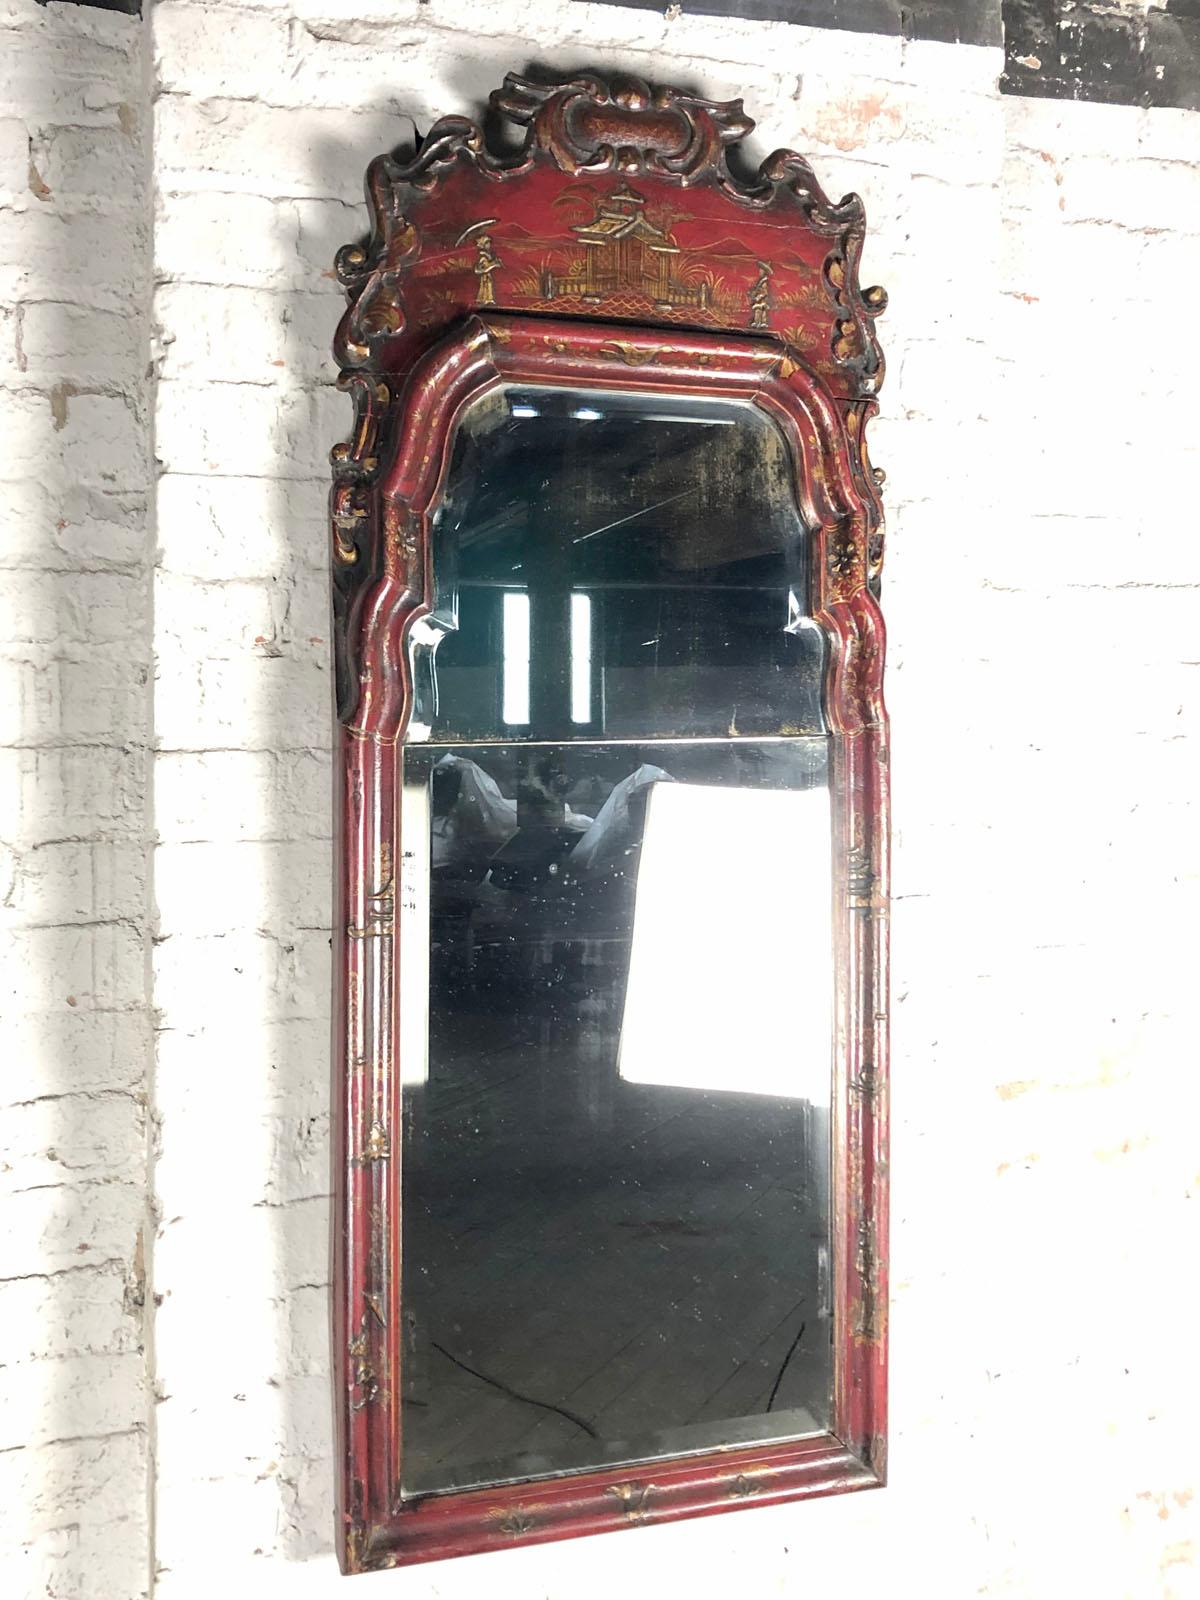 Englischer Spiegel der Queen-Anne-Periode mit rotem Chinoiserie-Dekor in typischer Form mit einem stark profilierten Rahmen, der die geteilte Spiegelplatte umgibt, gekrönt von einem Wappen mit lebhaft geschnitztem Rand, einzigartig geschnitzt aus